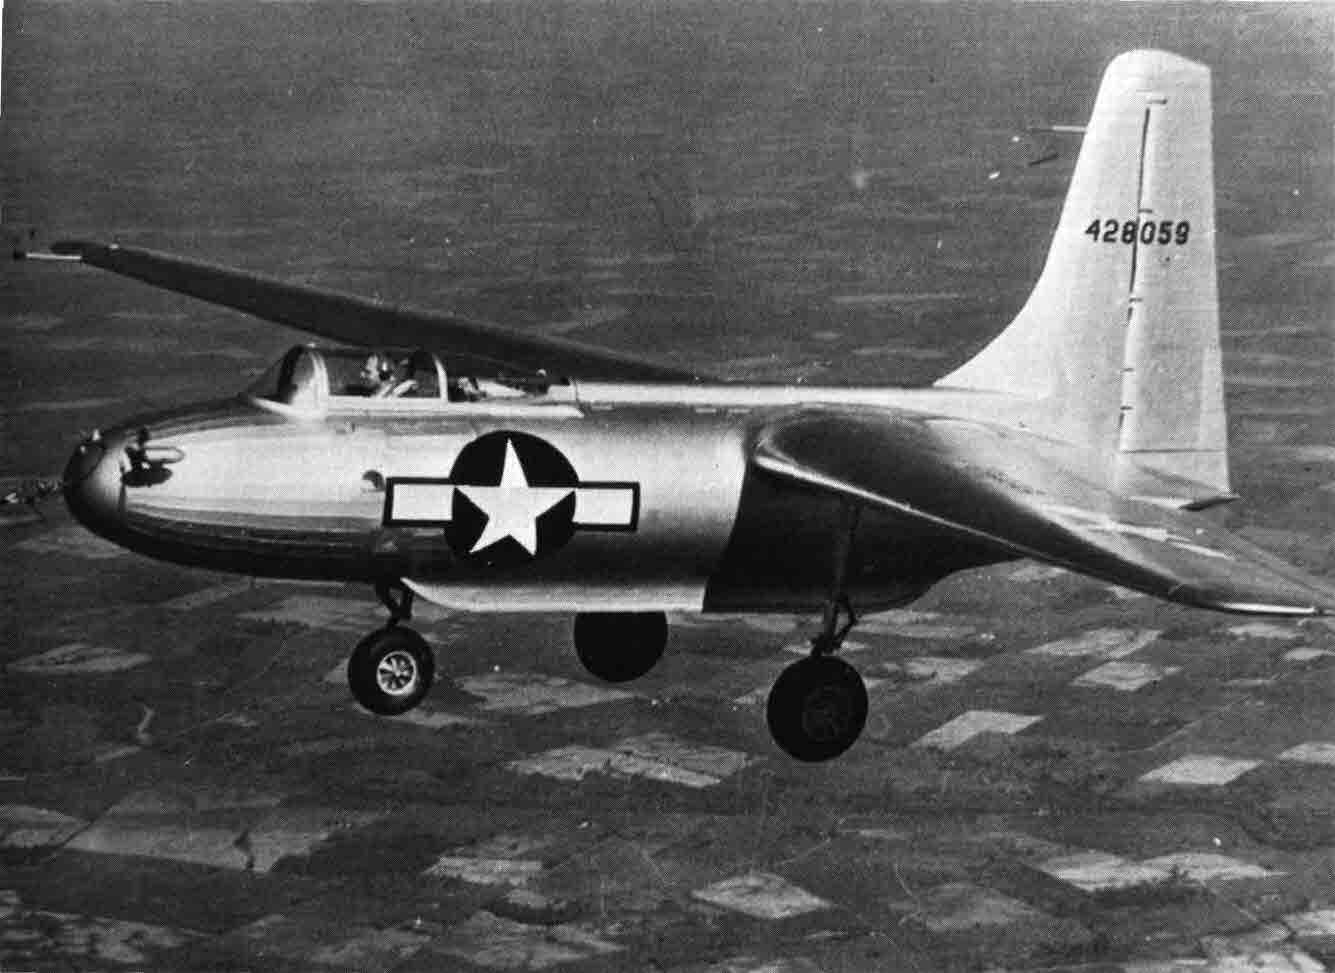 Bizarre Warplanes From World War II (Part 2)